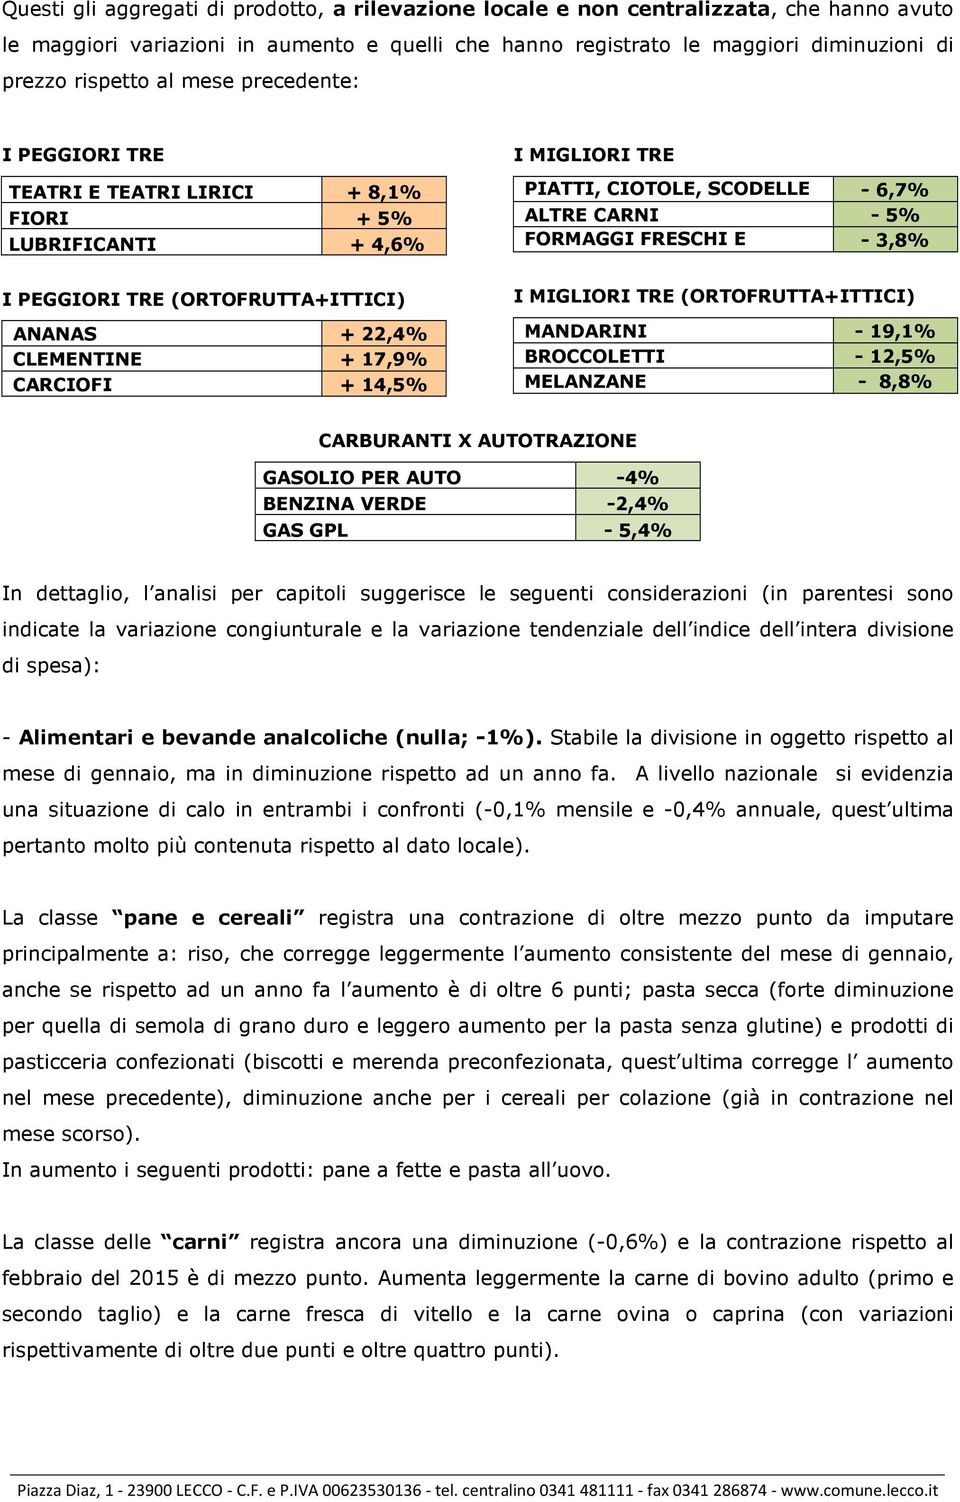 PIATTI, CIOTOLE, SCODELLE - 6,7% EALTRE CARNI - 5% FORMAGGI FRESCHI E - 3,8% LATTIC.